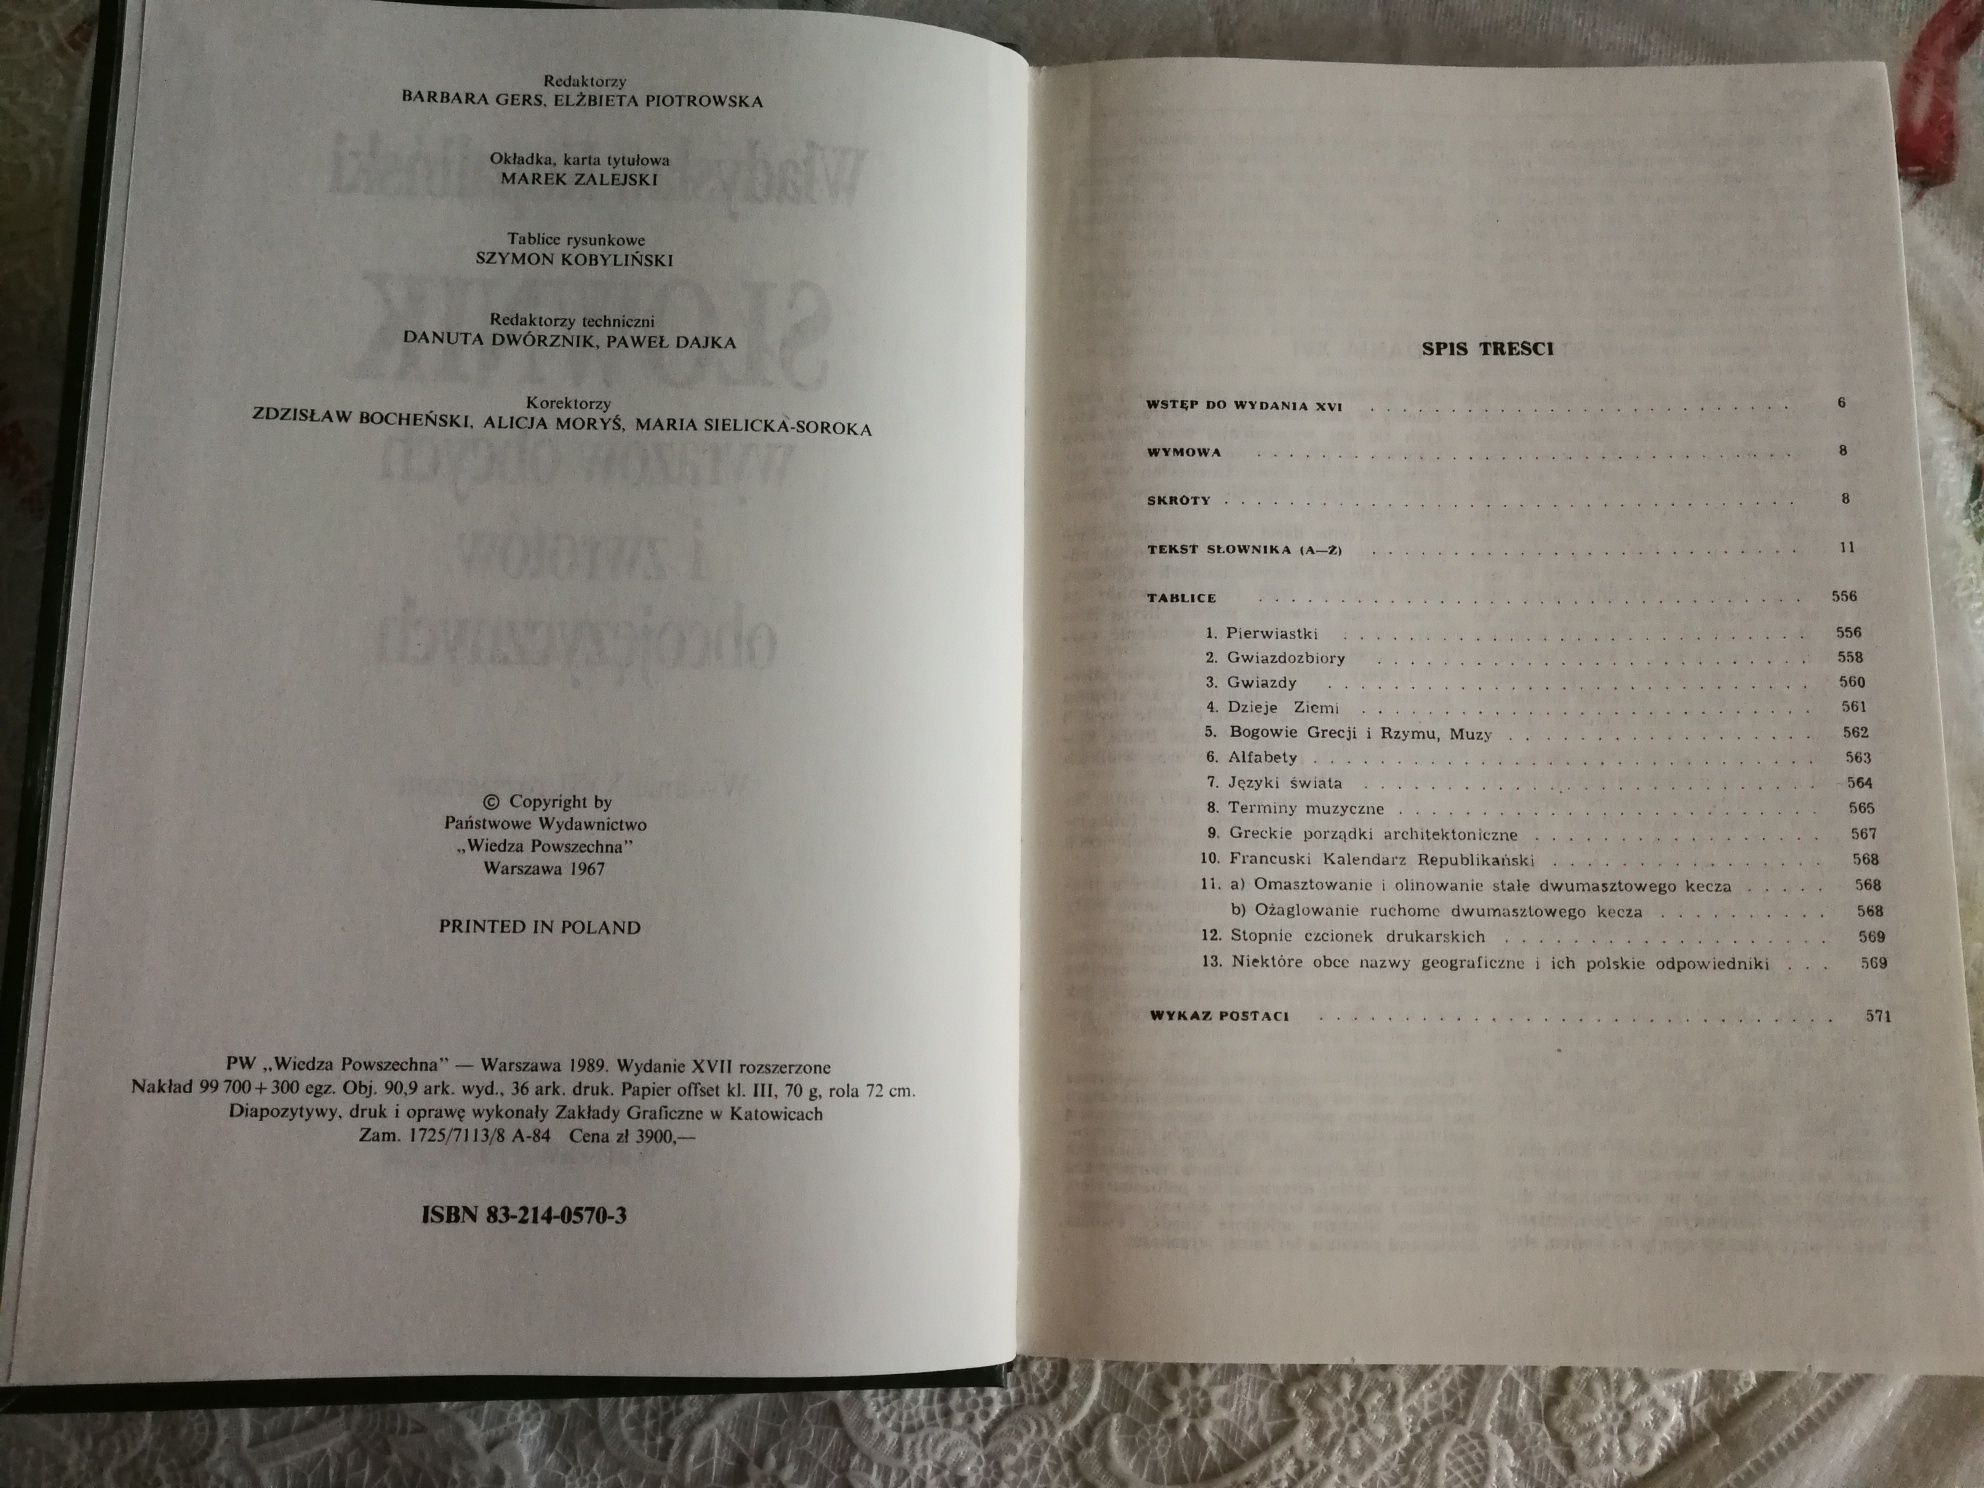 Słownik wyrazów obcych i zwrotów obcojęzycznych, W.Kopaliński, WP 1989